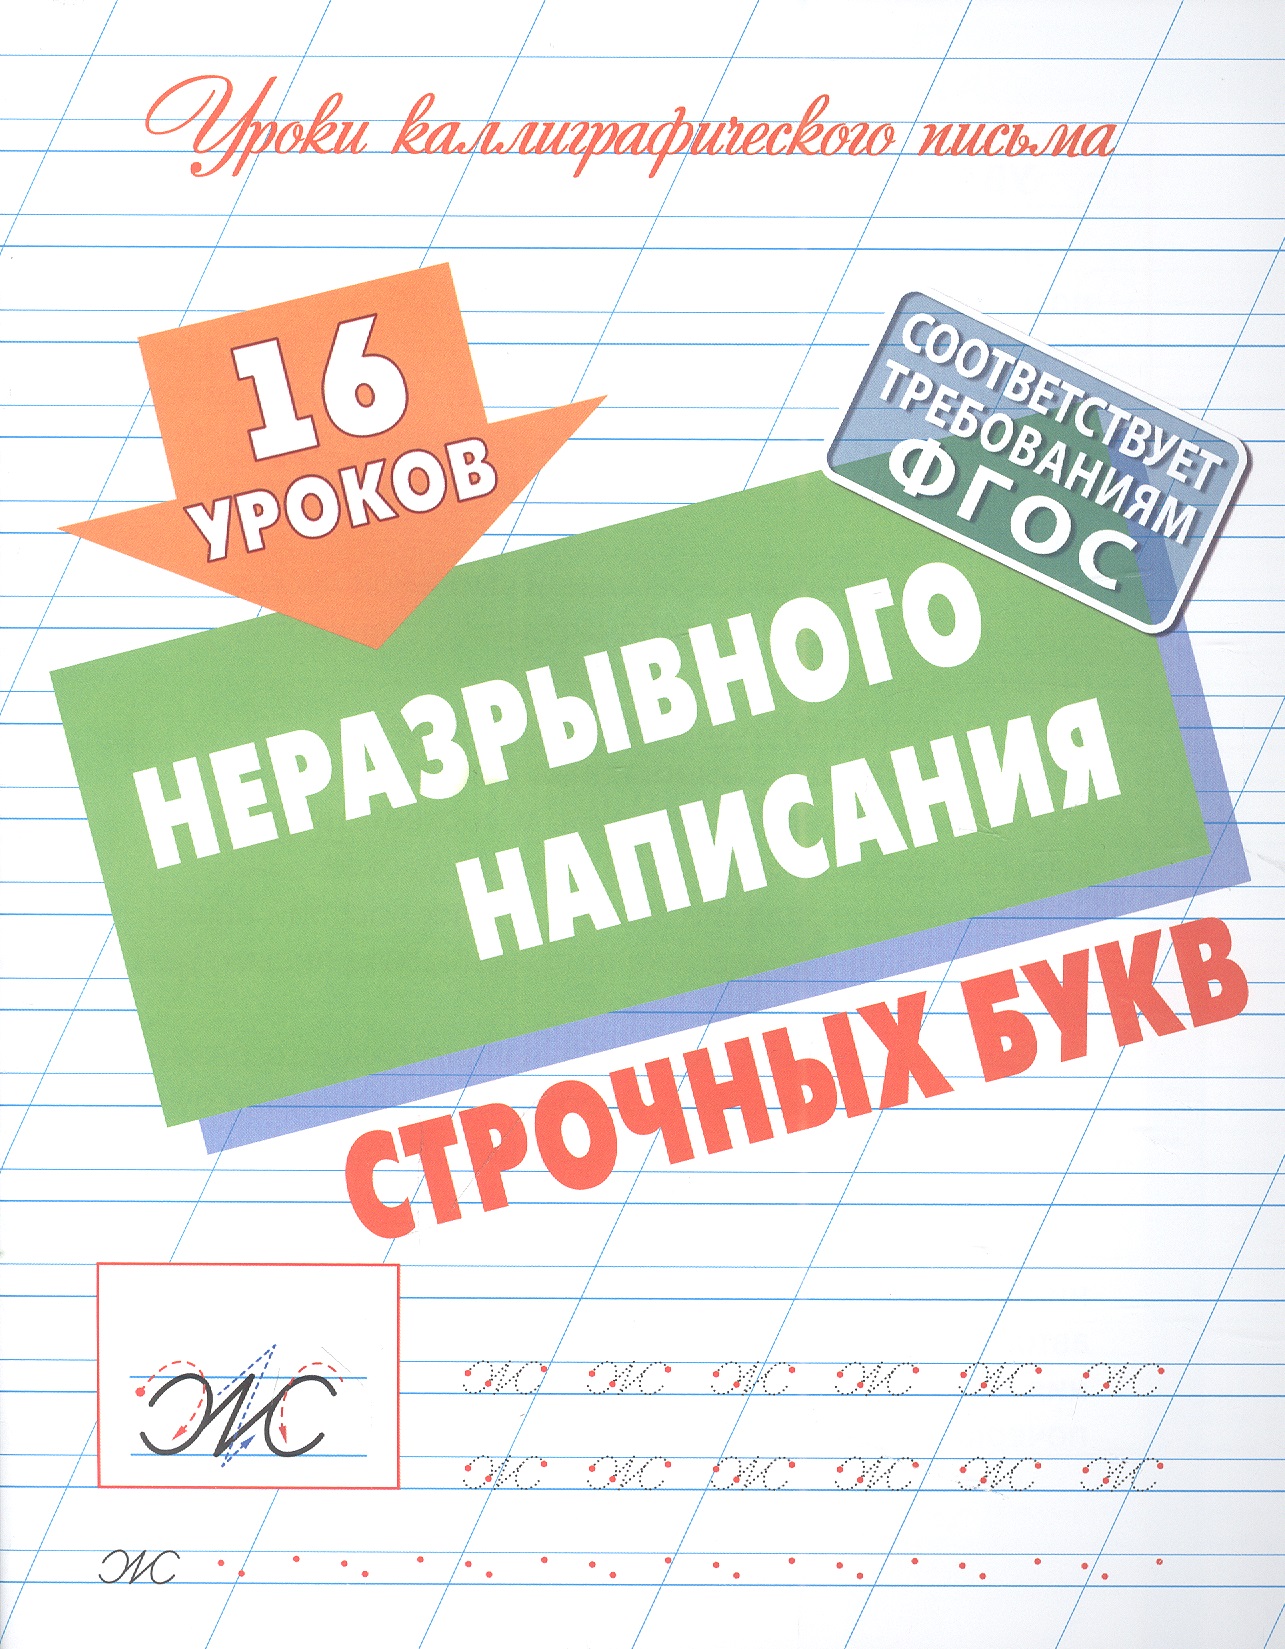 Петренко Станислав Викторович 16 уроков неразрывного написания строчных букв